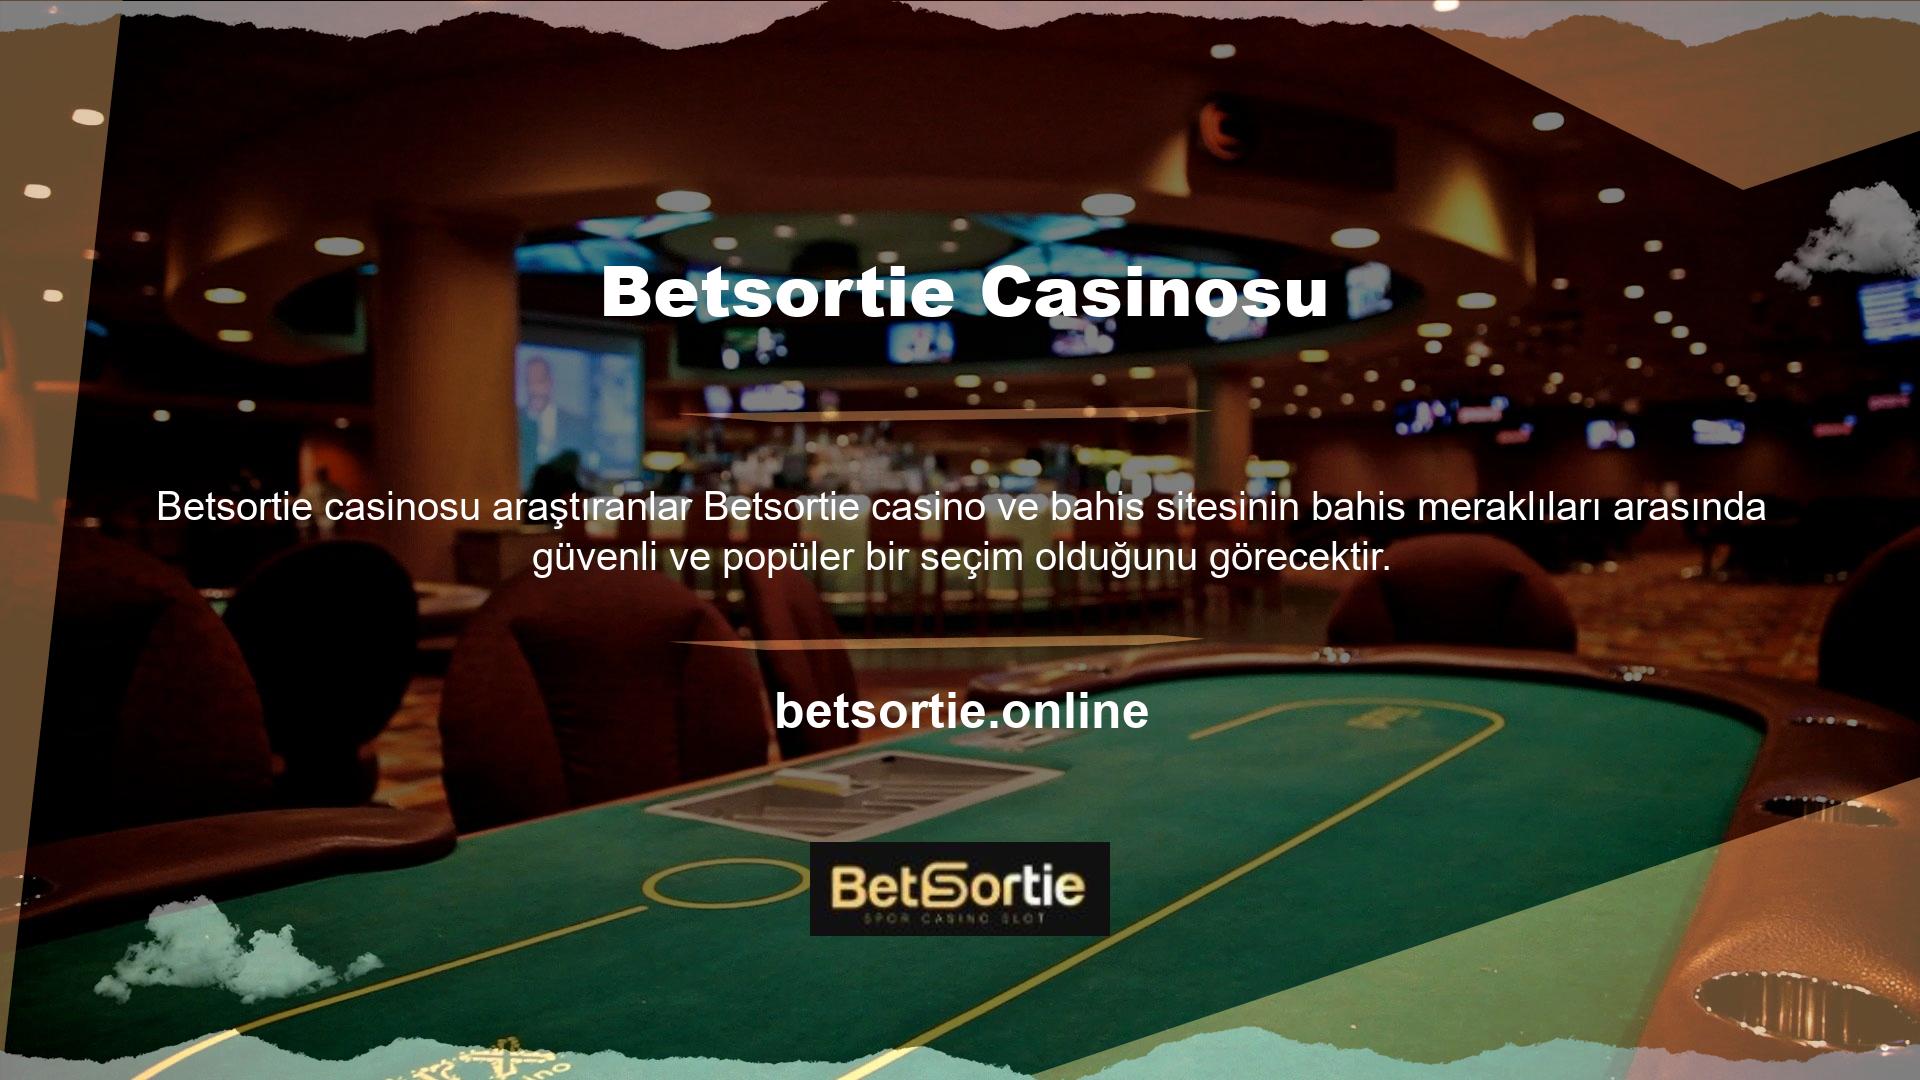 Betsortie bu site, oluşturulduğu tarihte veya sonrasında oluşturulan tüm oyunlar ve uygulamalar için geçerli olan bir lisans kullanır